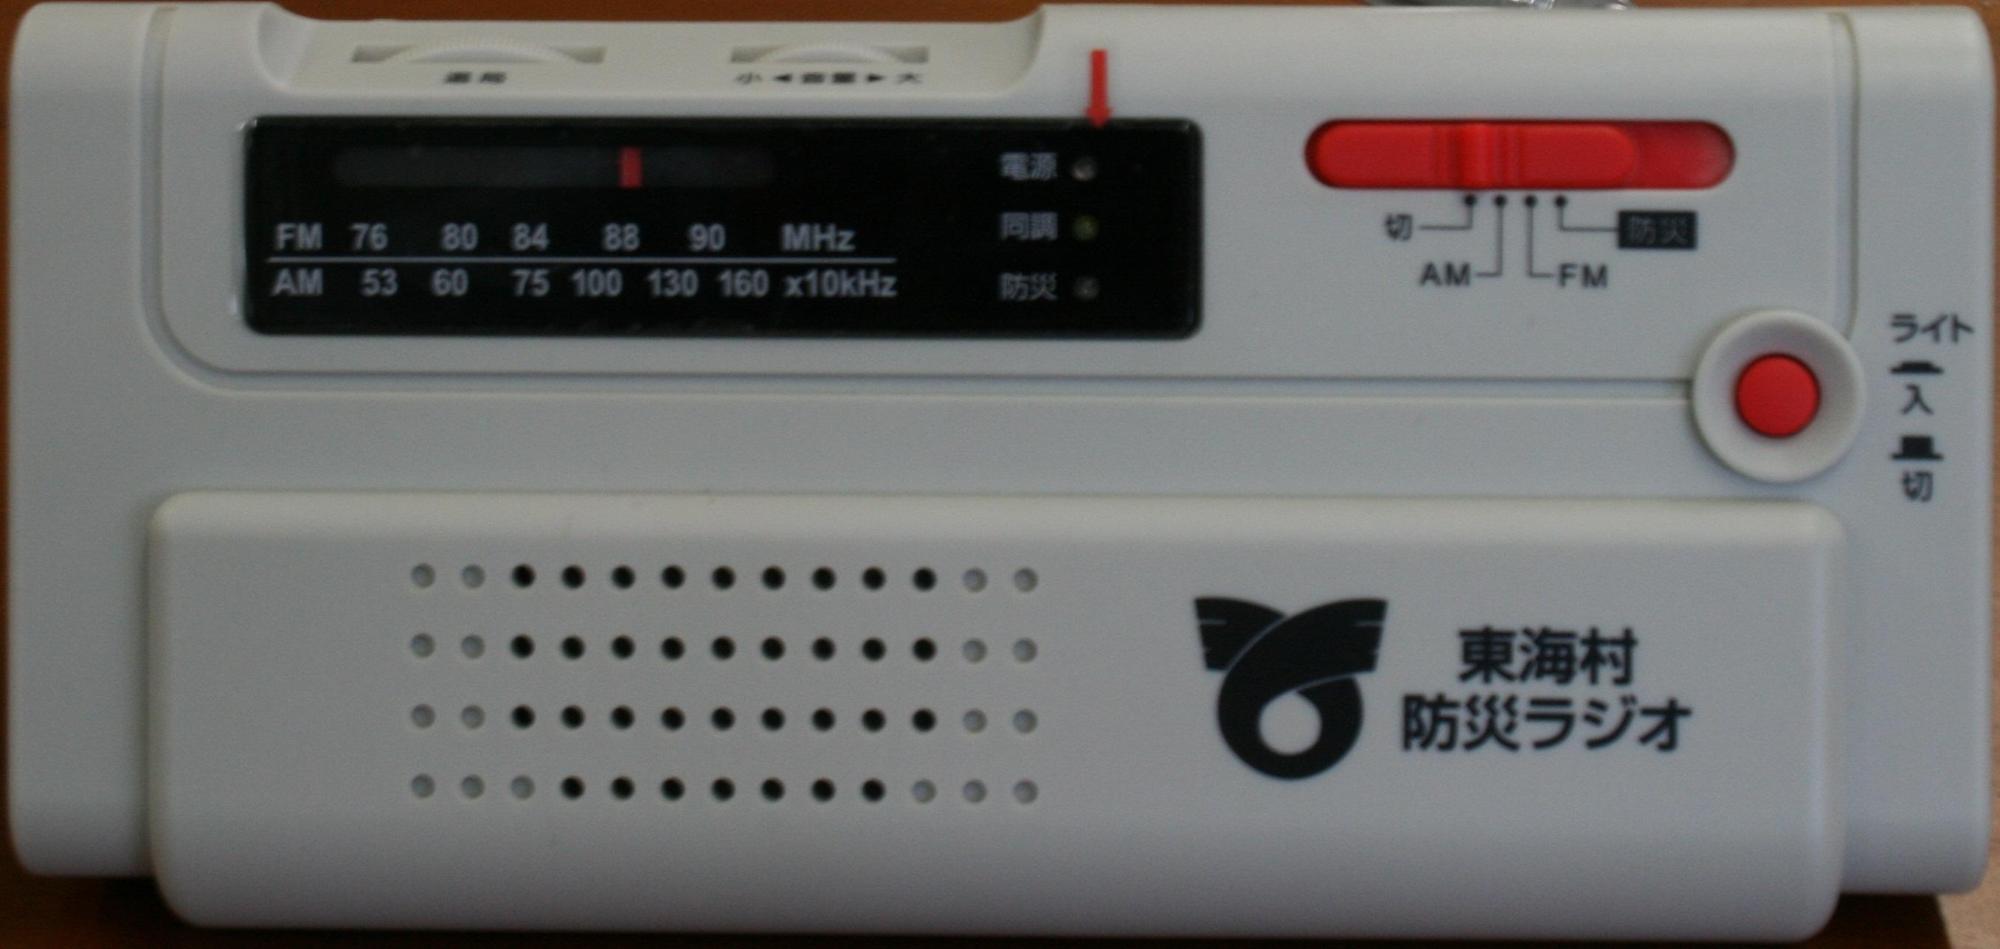 白い本体にライトのオン・オフボタンと、ラジオの切り替えスイッチ・チューニングダイヤルが付いた防災ラジオの写真